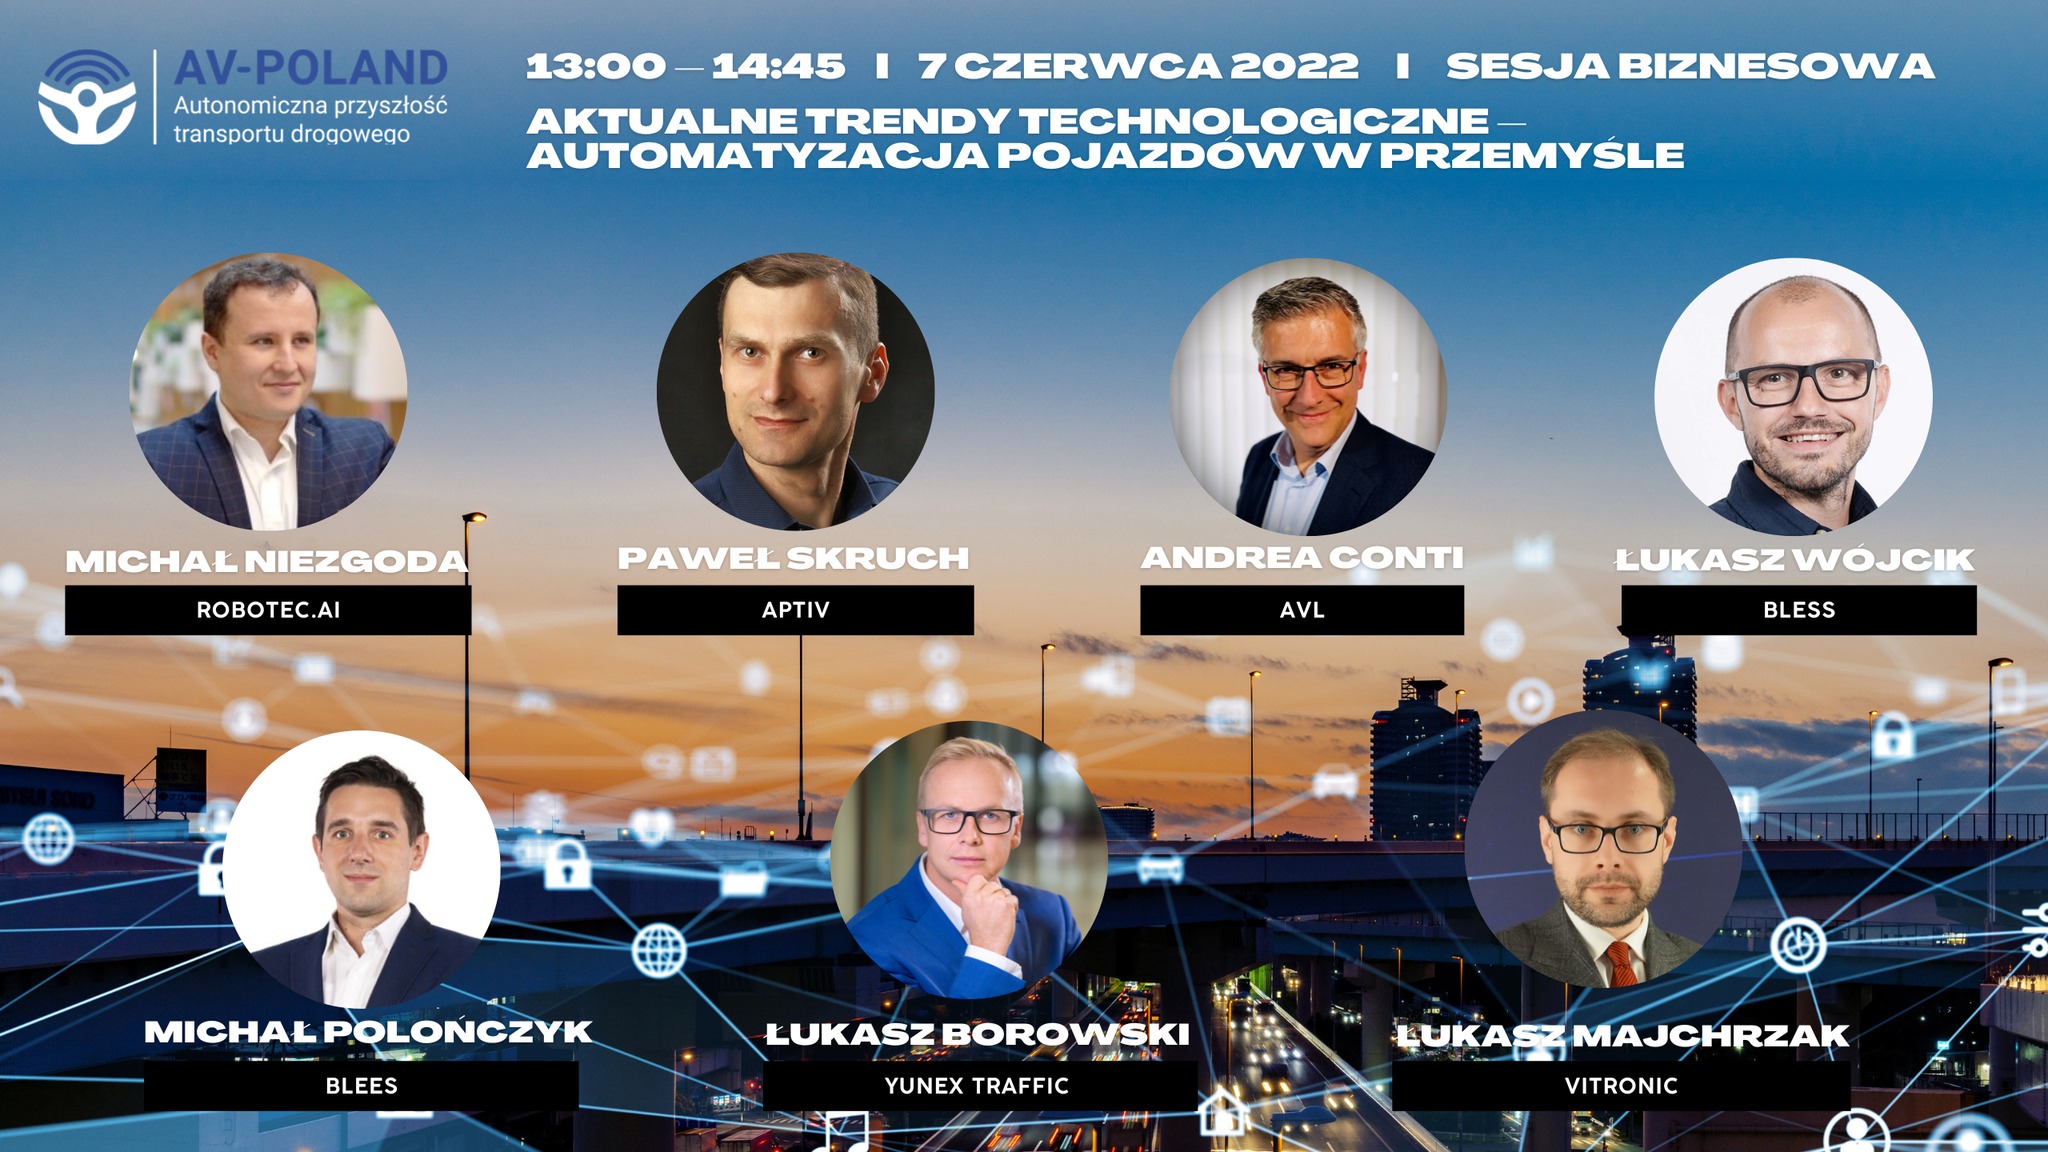 Eksperci konferencji AV-POLAND 2022